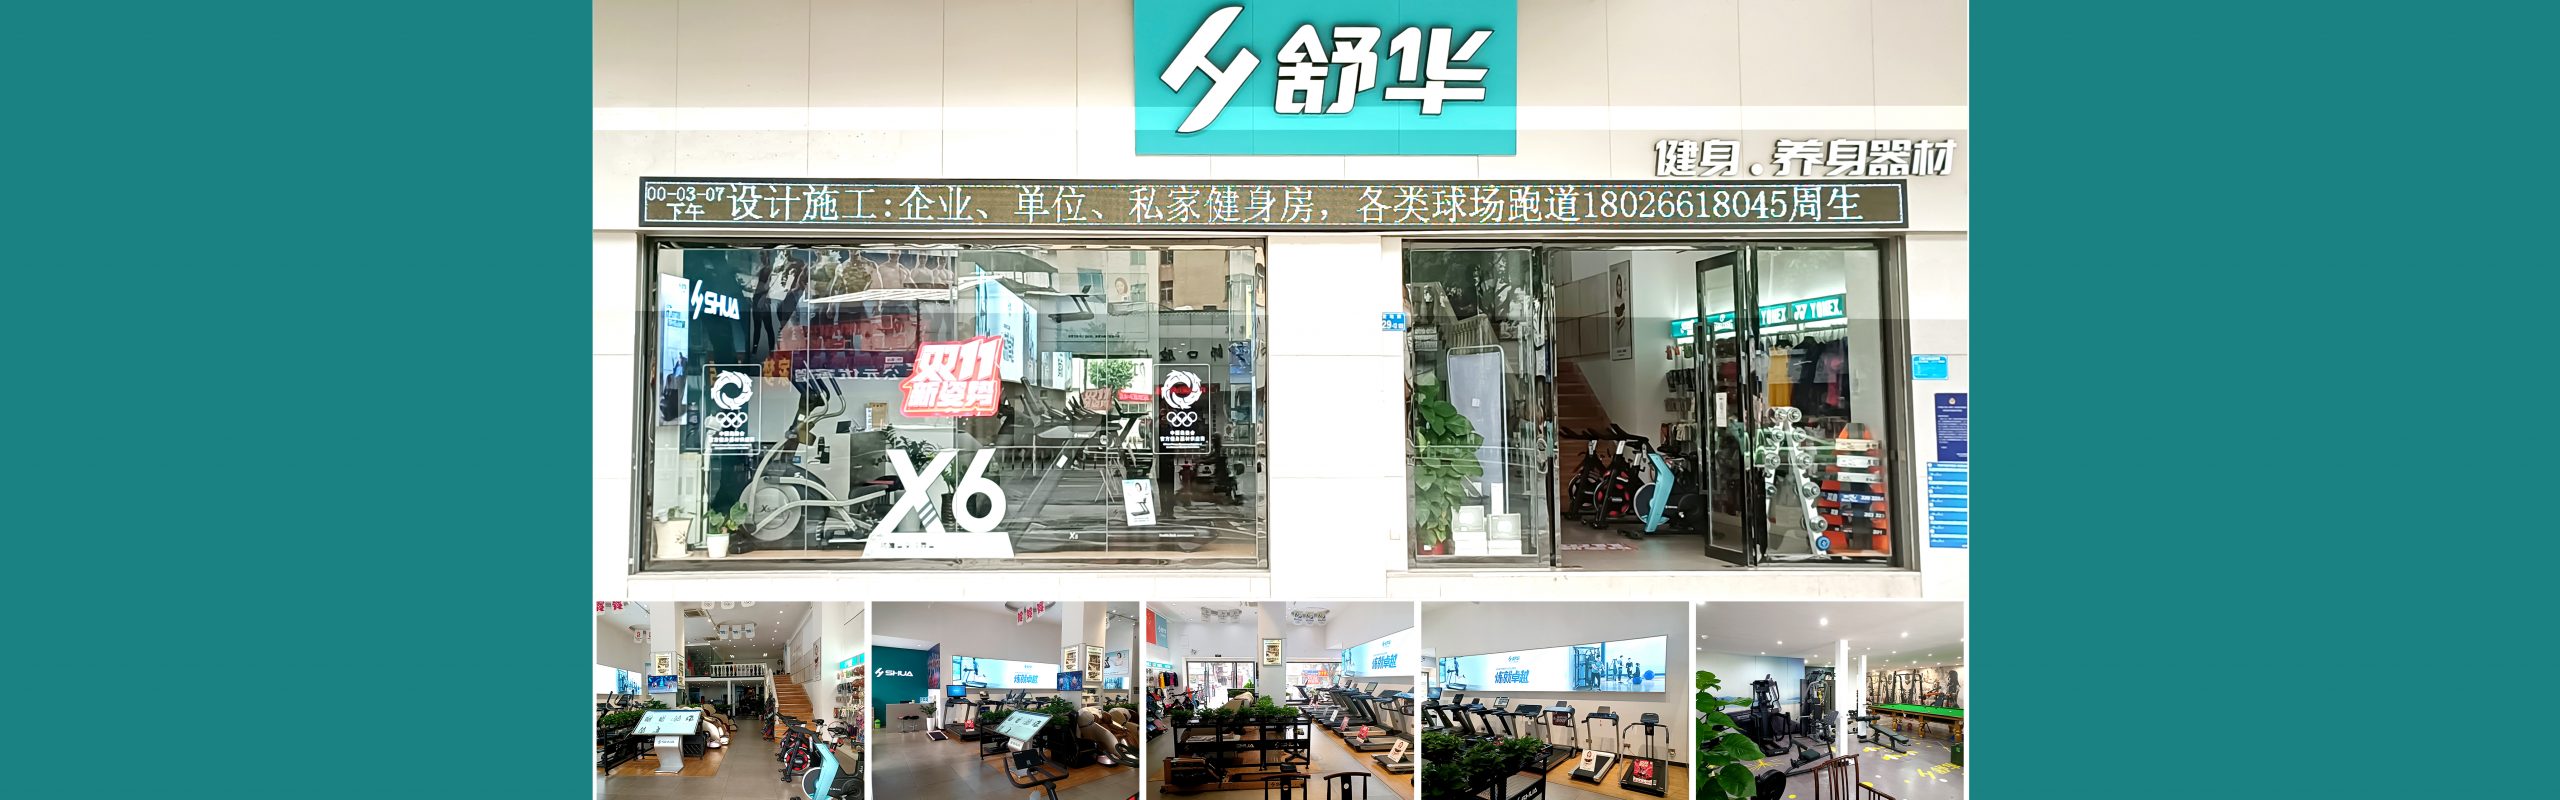 舒华惠州健身器材店